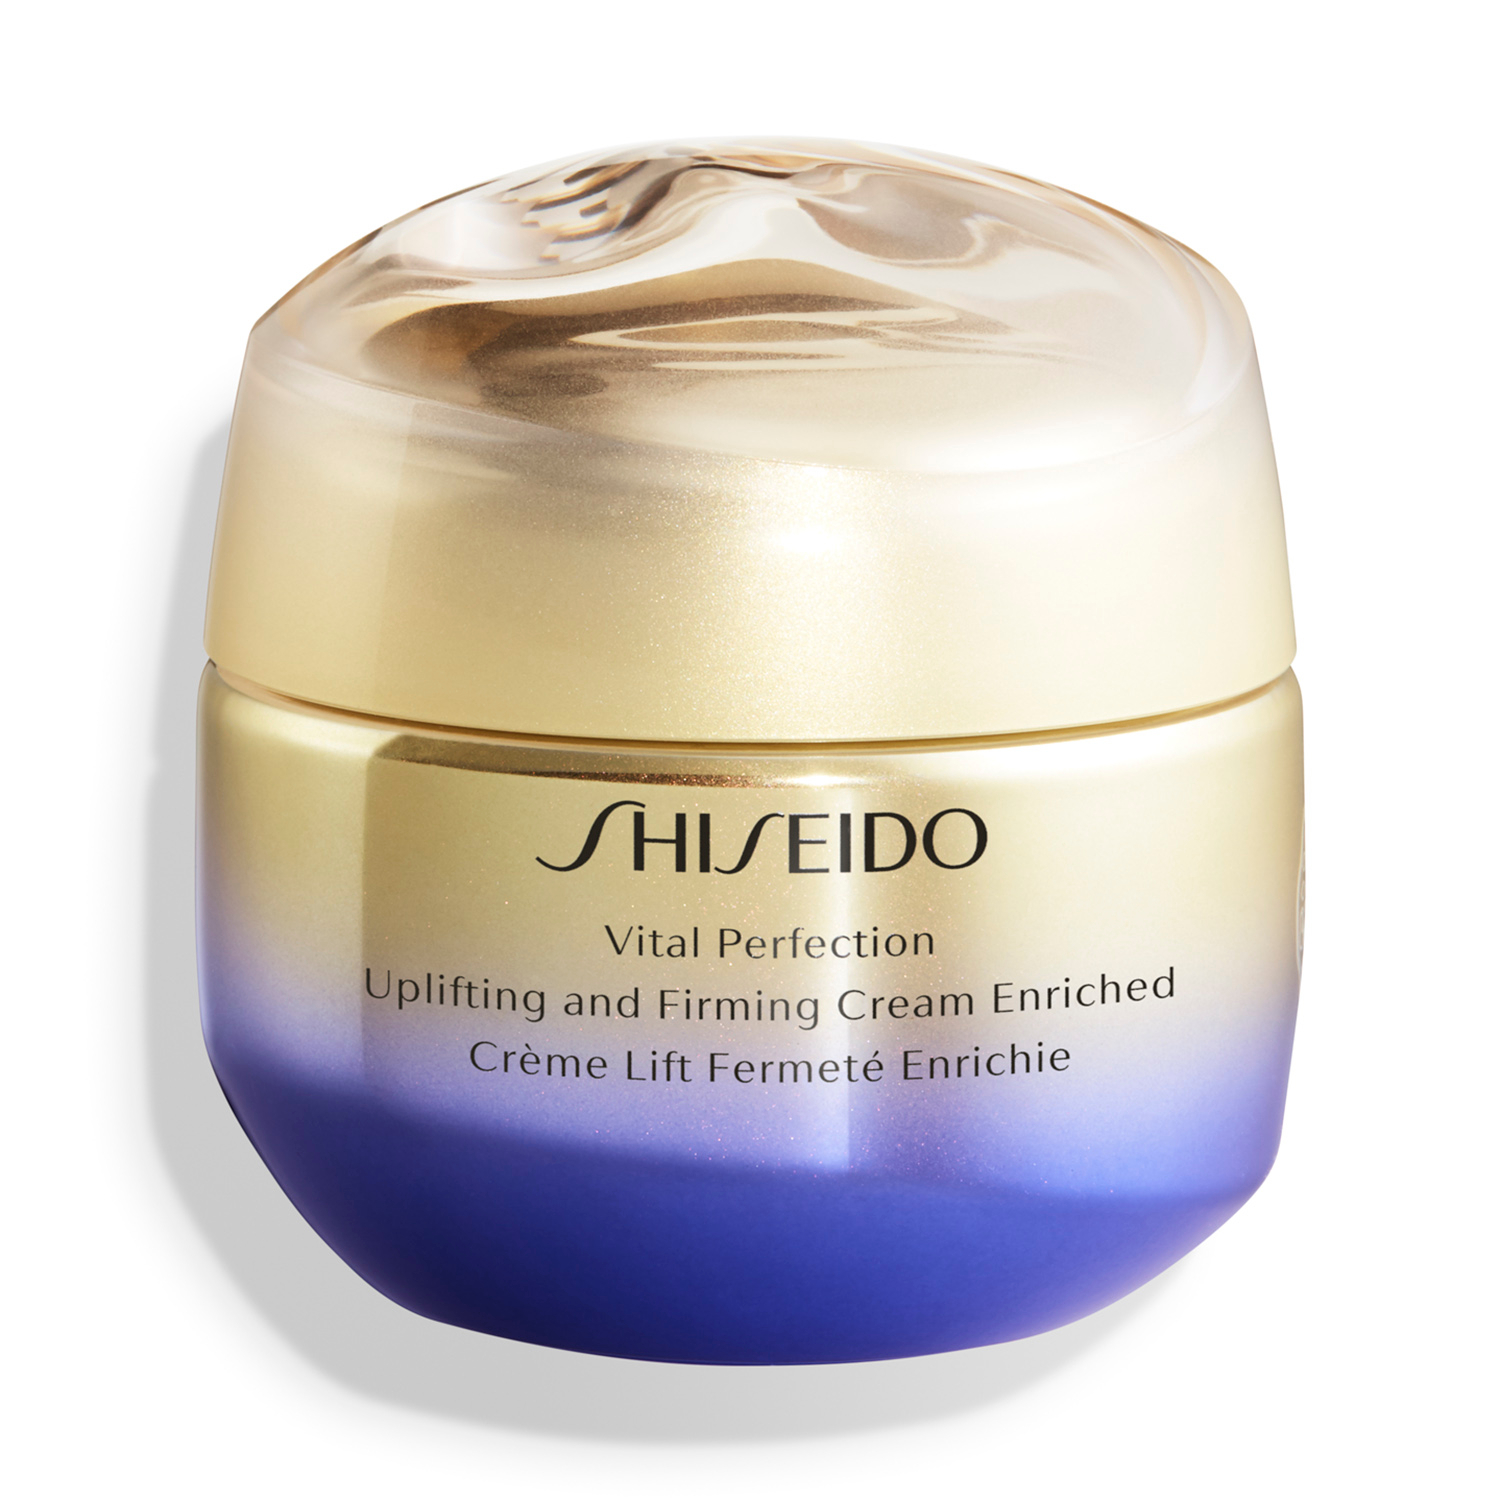 Питательный лифтинг-крем, повышающий упругость кожи Uplifting and Firming Cream Enriched, Vital Perfection, Shiseido